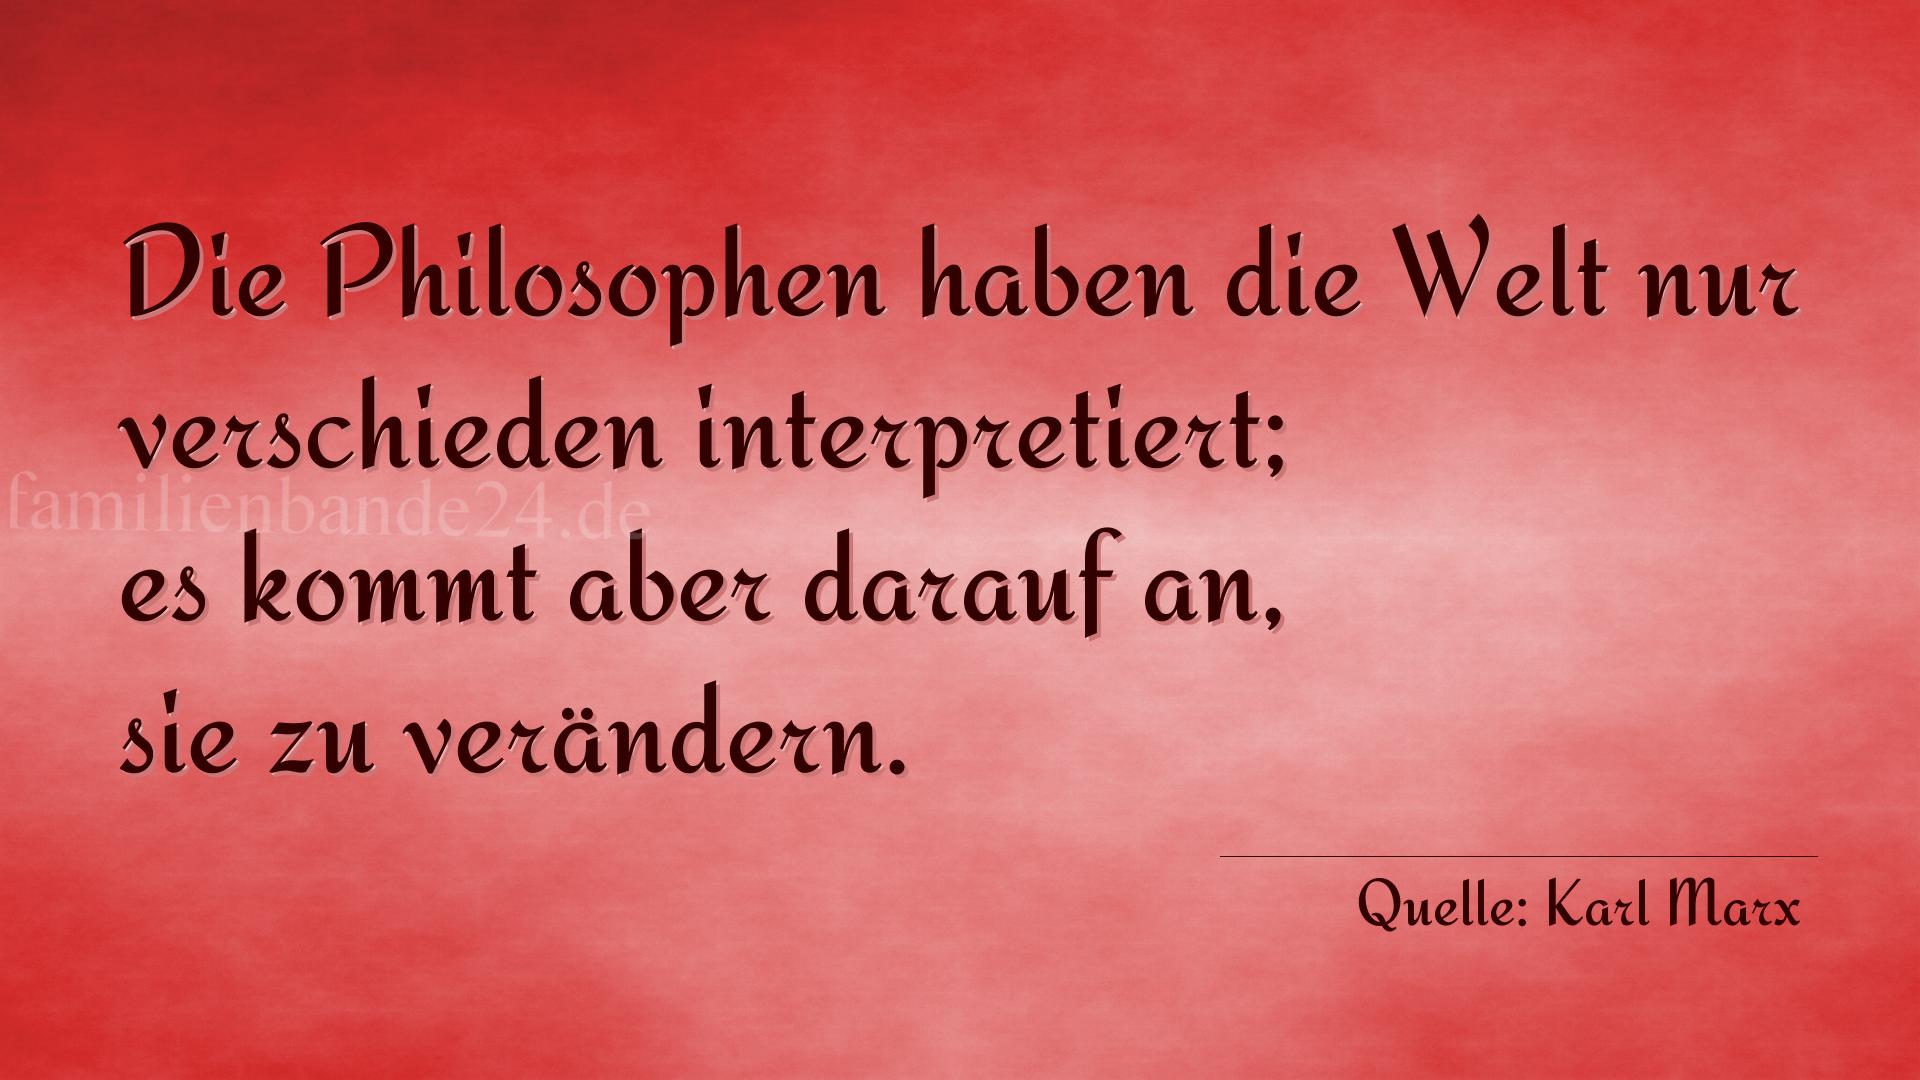 Aphorismus Nummer 1269 (von Karl Marx): "Die Philosophen haben die Welt nur verschieden interpreti [...]